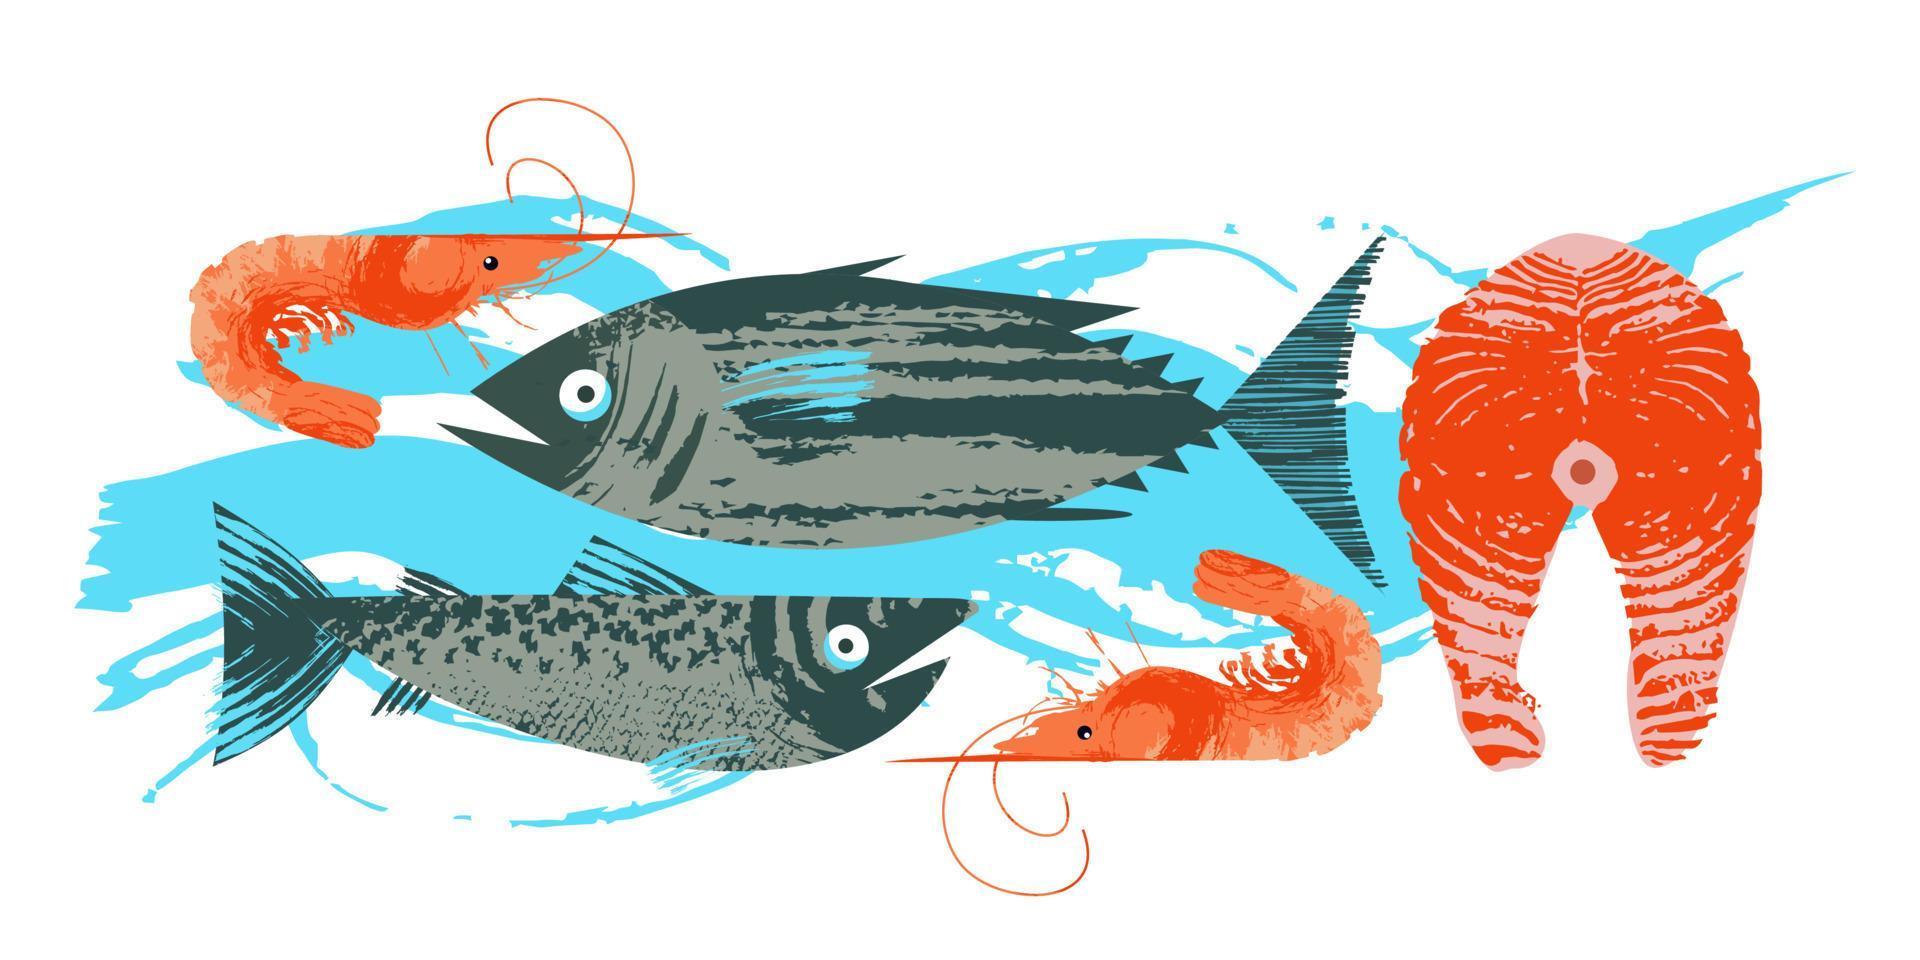 frutti di mare. pesce. illustrazione vettoriale colorata, una raccolta di immagini di diversi pesci e gamberi con una trama vettoriale disegnata a mano unica.